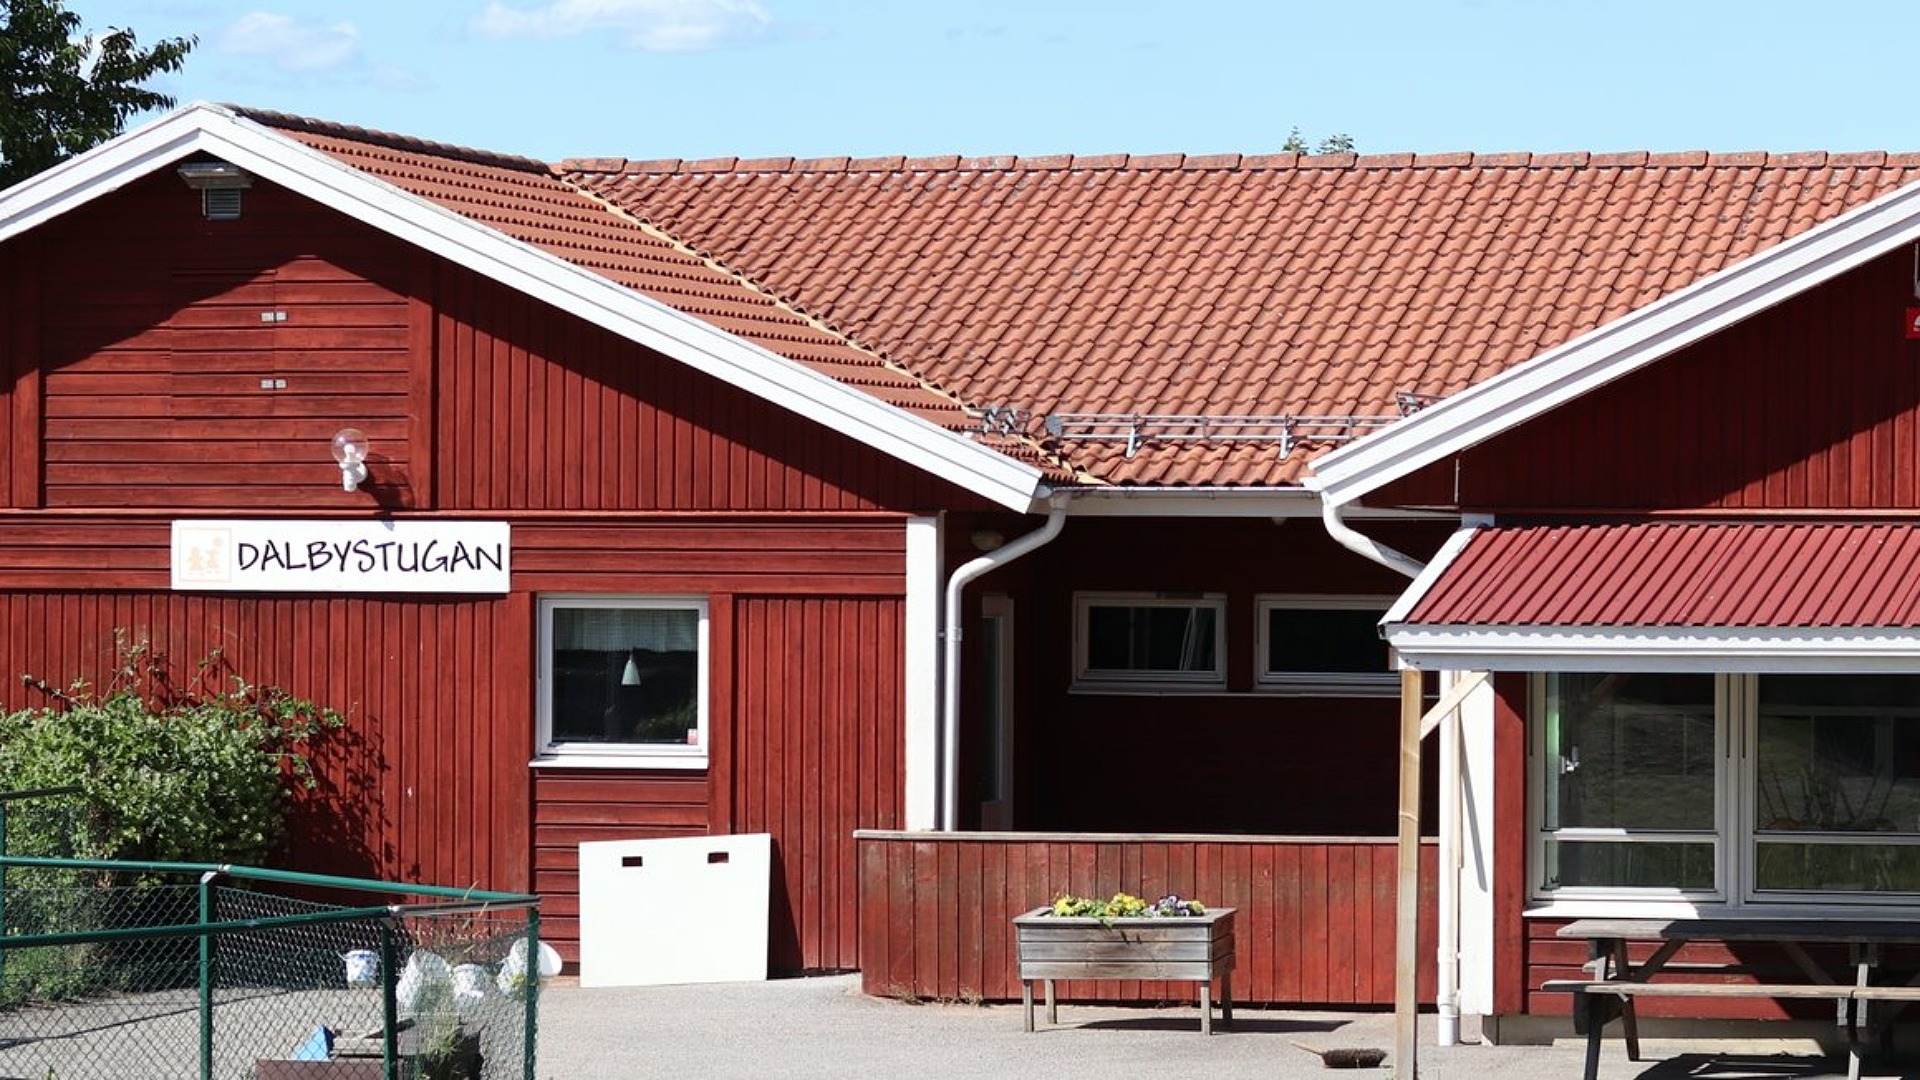 Dalbystugans förskola är en fristående förskola i Västerljung. Förskolan ligger i ett rött enplanshus.